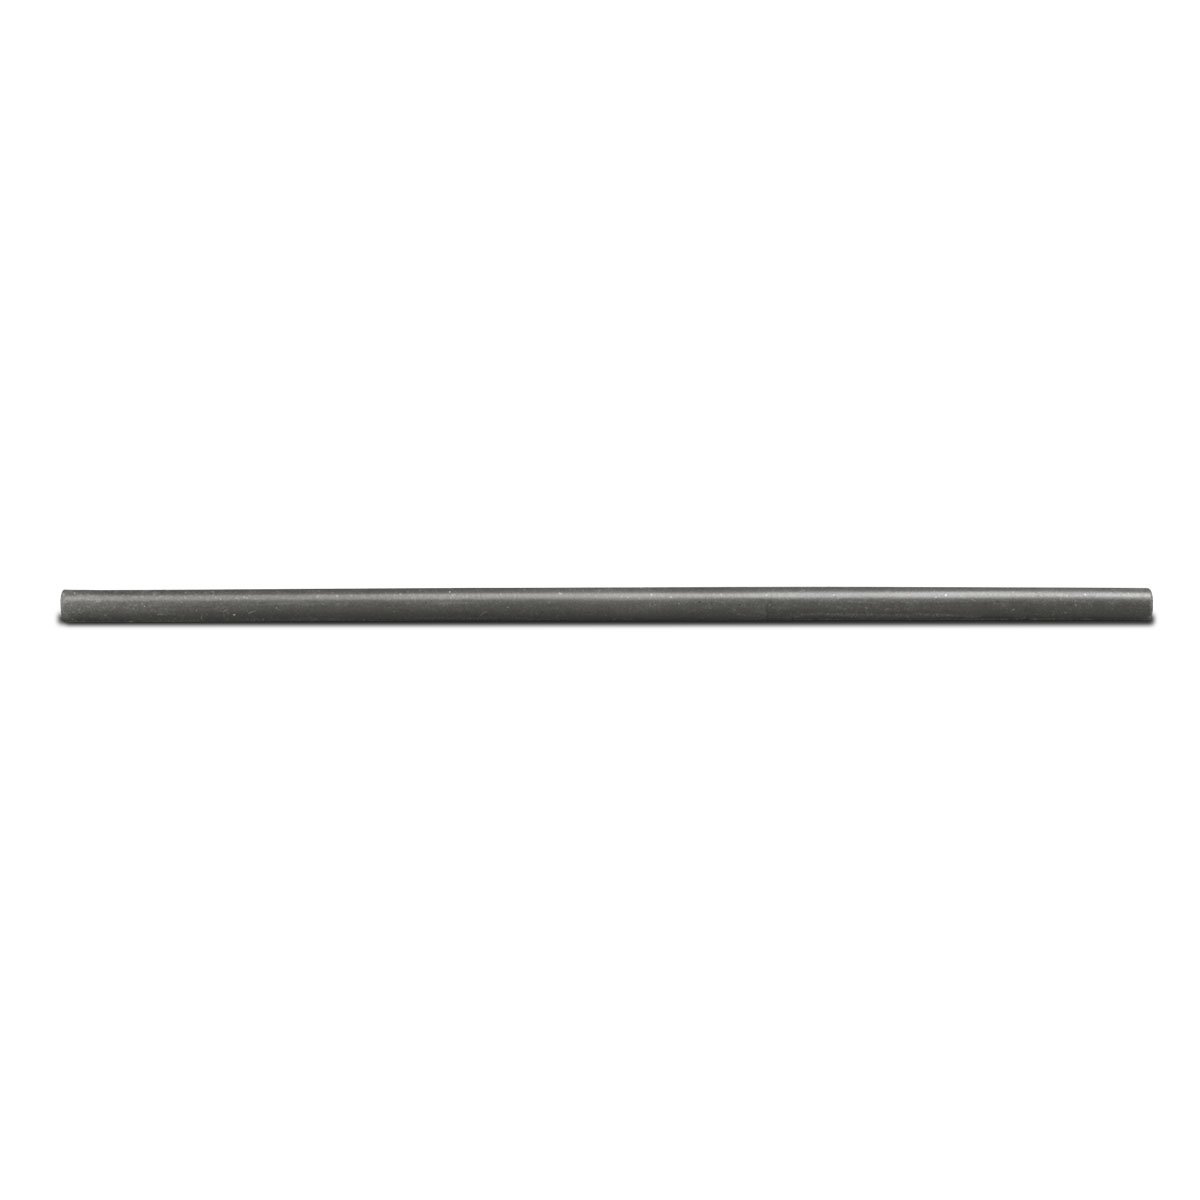 Cratex bâton de broyage, Ø 6 x 150 mm, Taille du grain 240, Rond, Gris